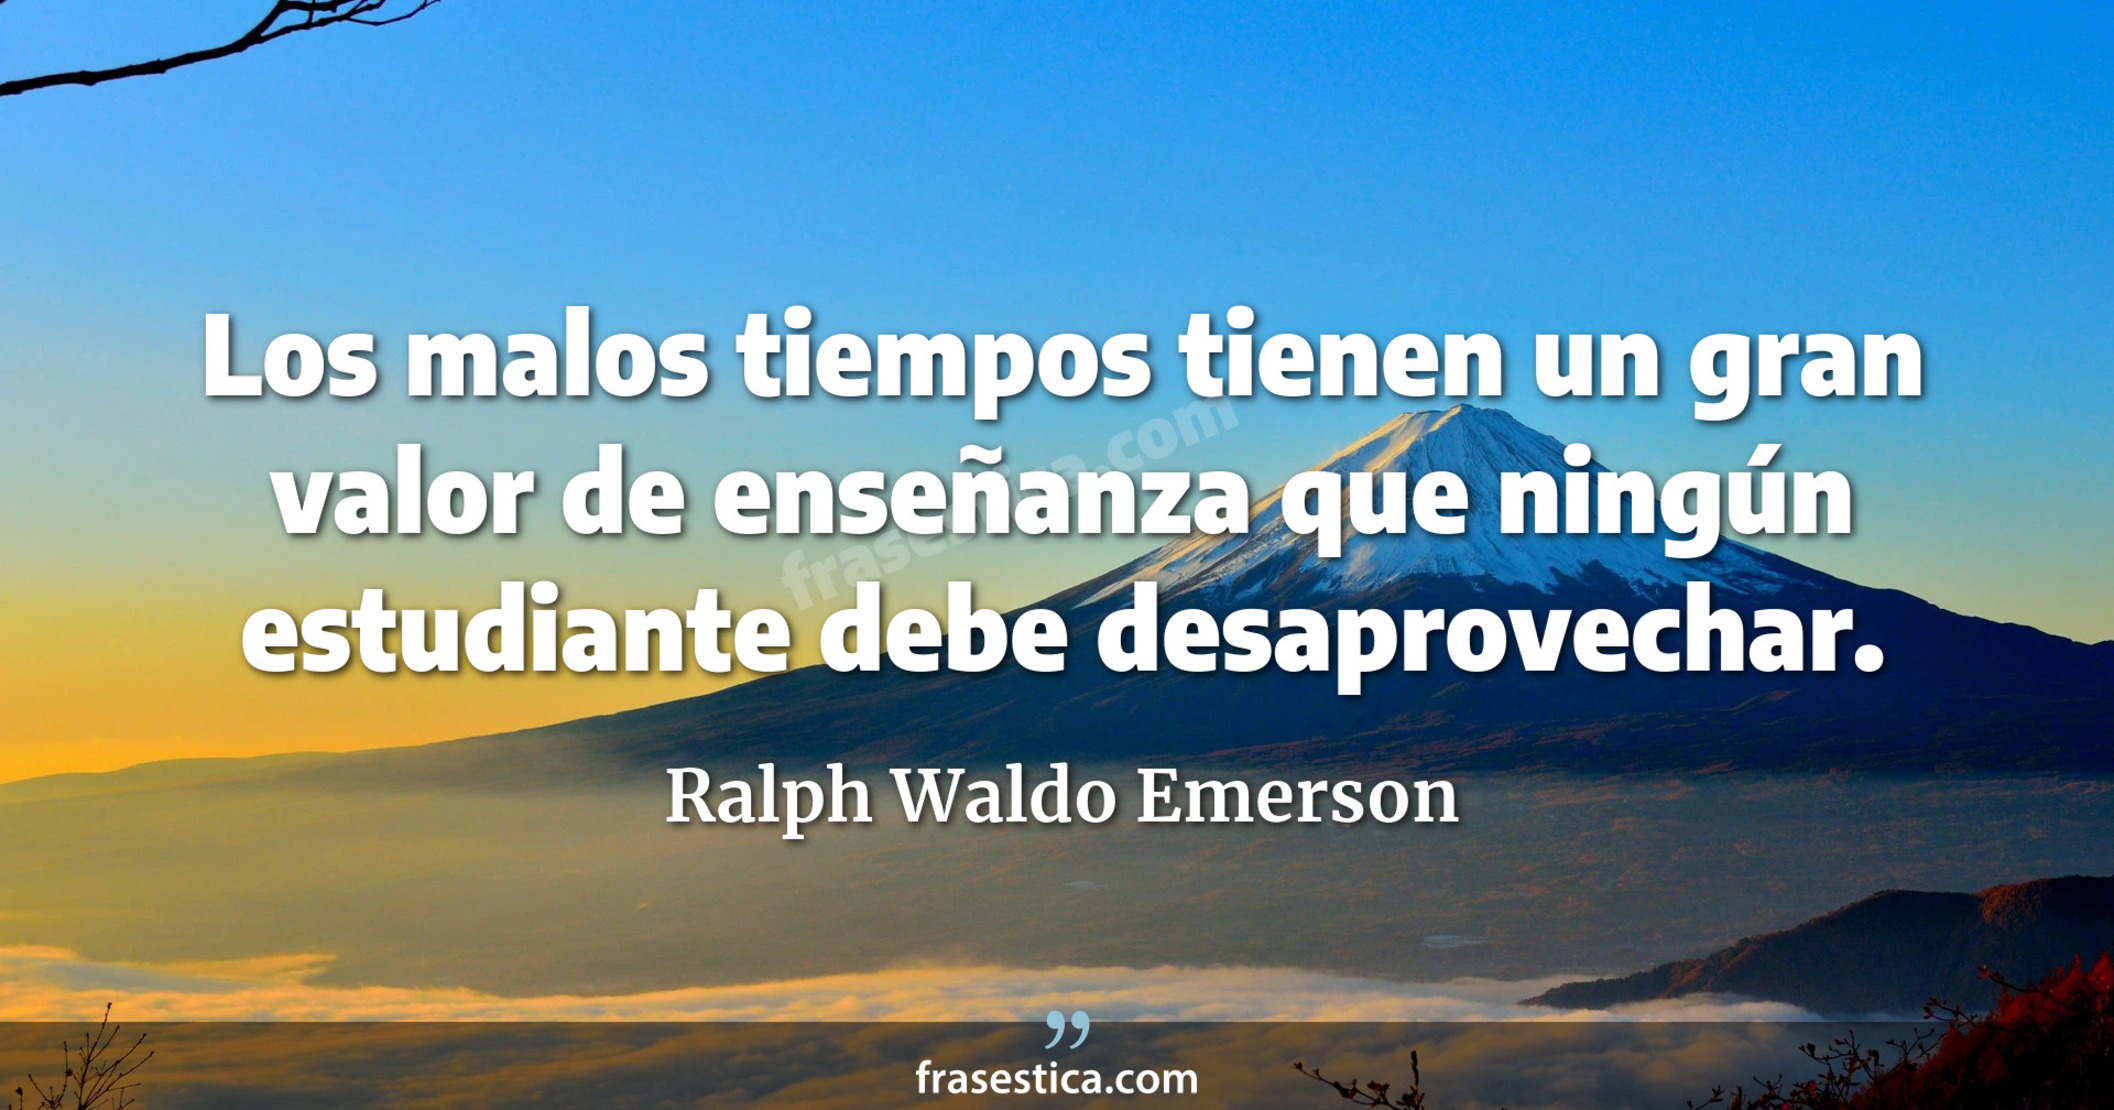 Los malos tiempos tienen un gran valor de enseñanza que ningún estudiante debe desaprovechar. - Ralph Waldo Emerson